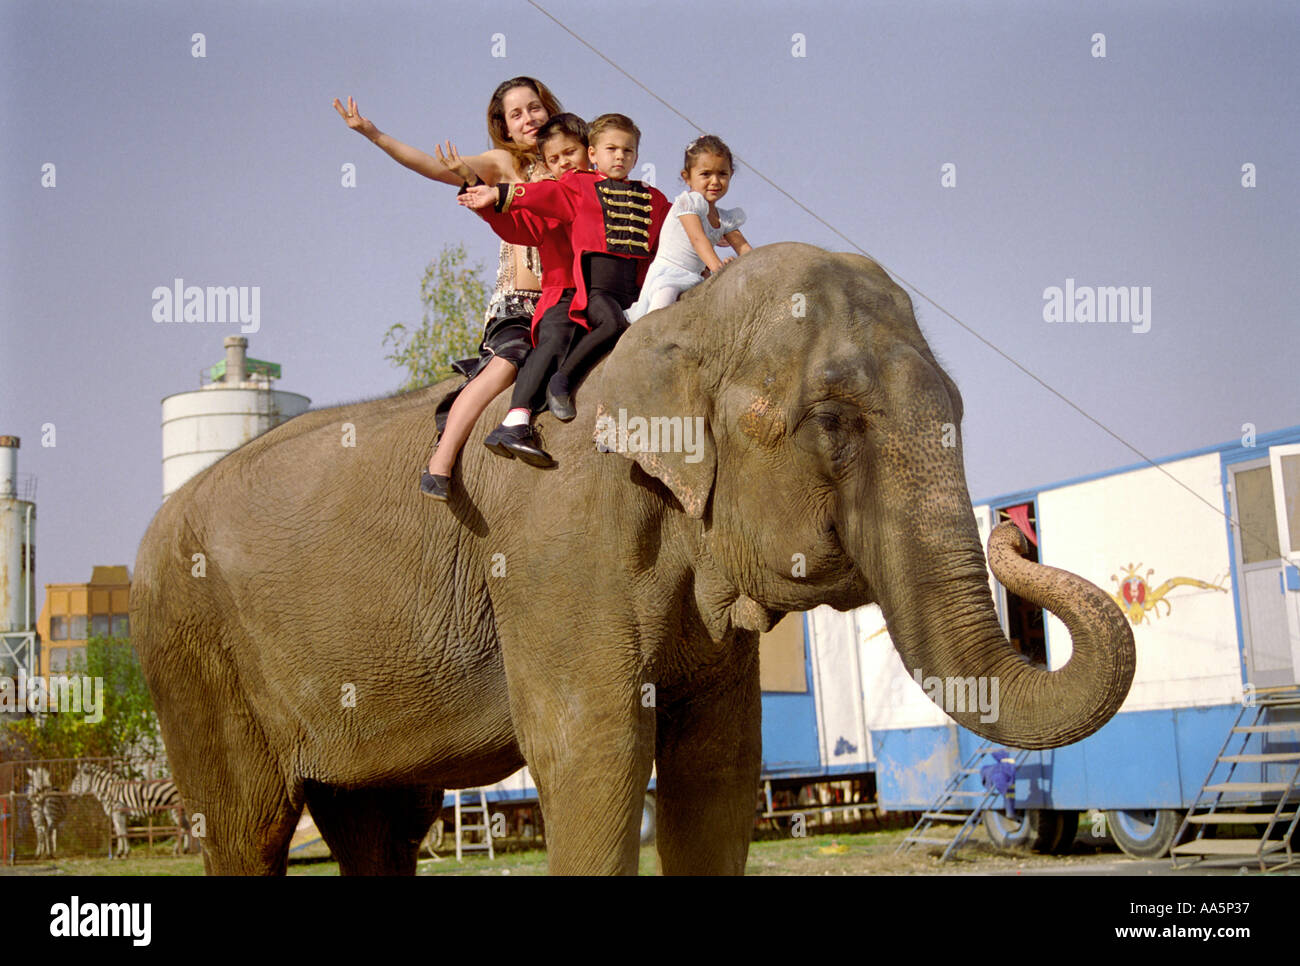 Les enfants en cirque sur elephant Banque D'Images